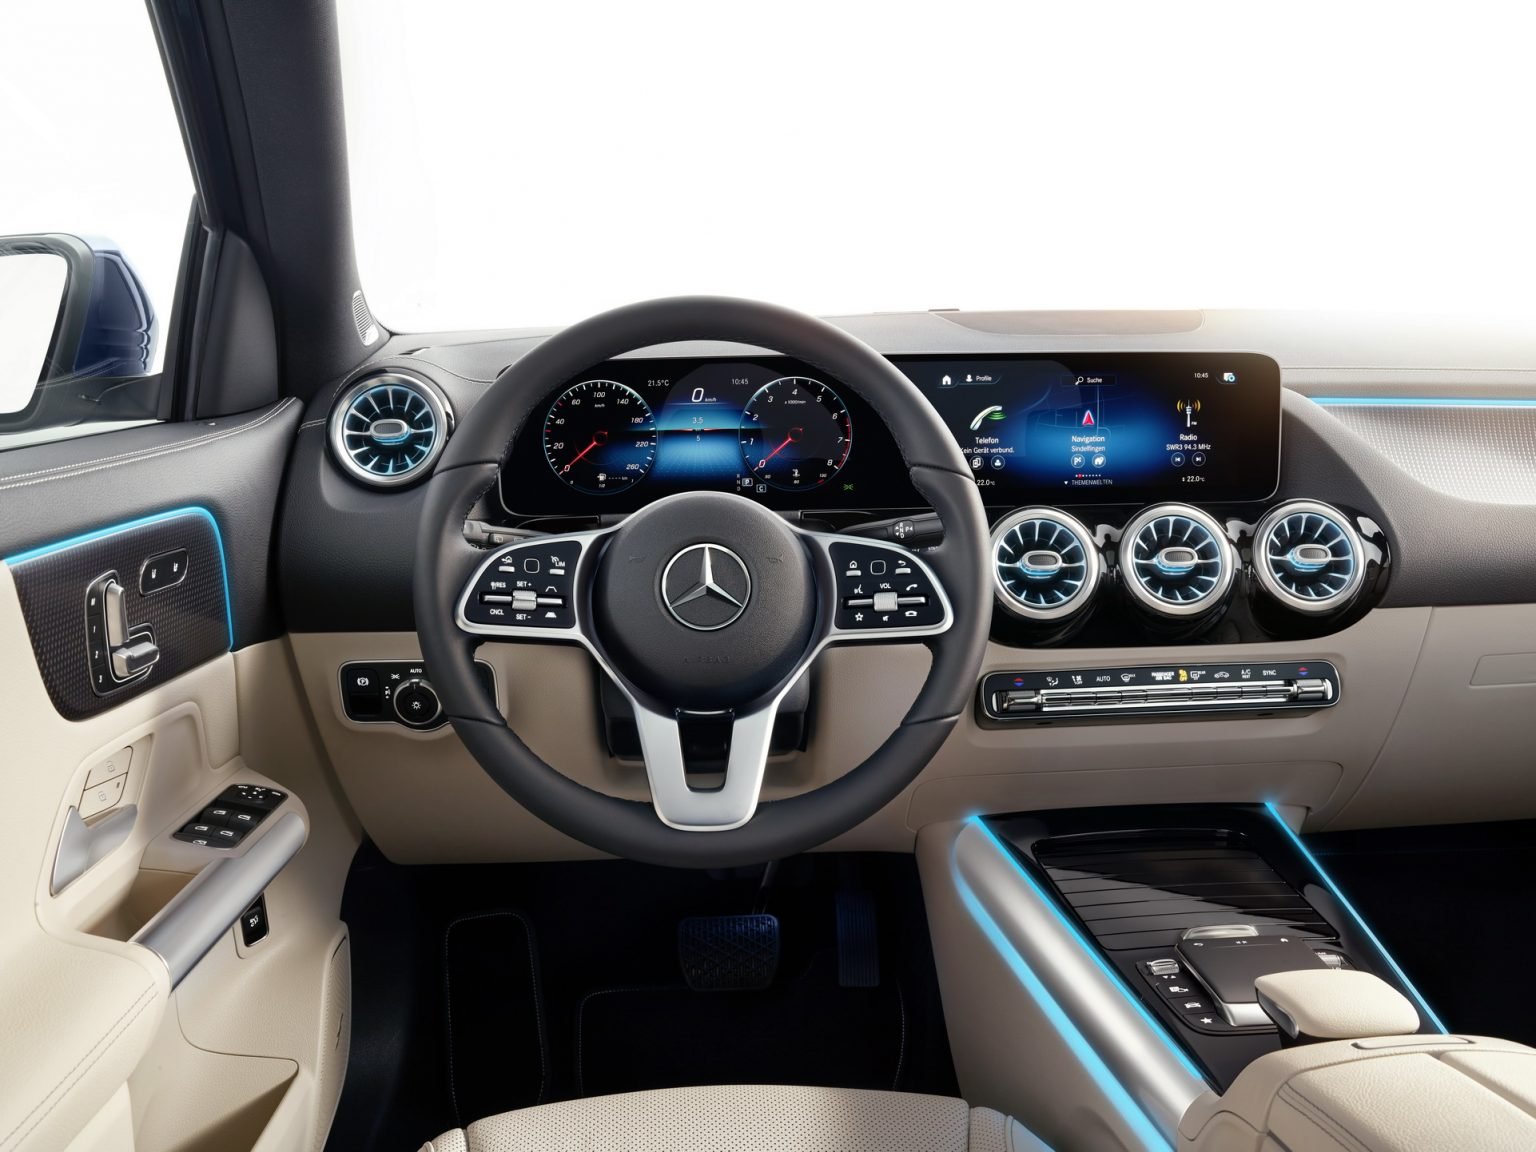 Ile kosztuje nowy Mercedes GLA 2020? Polski cennik